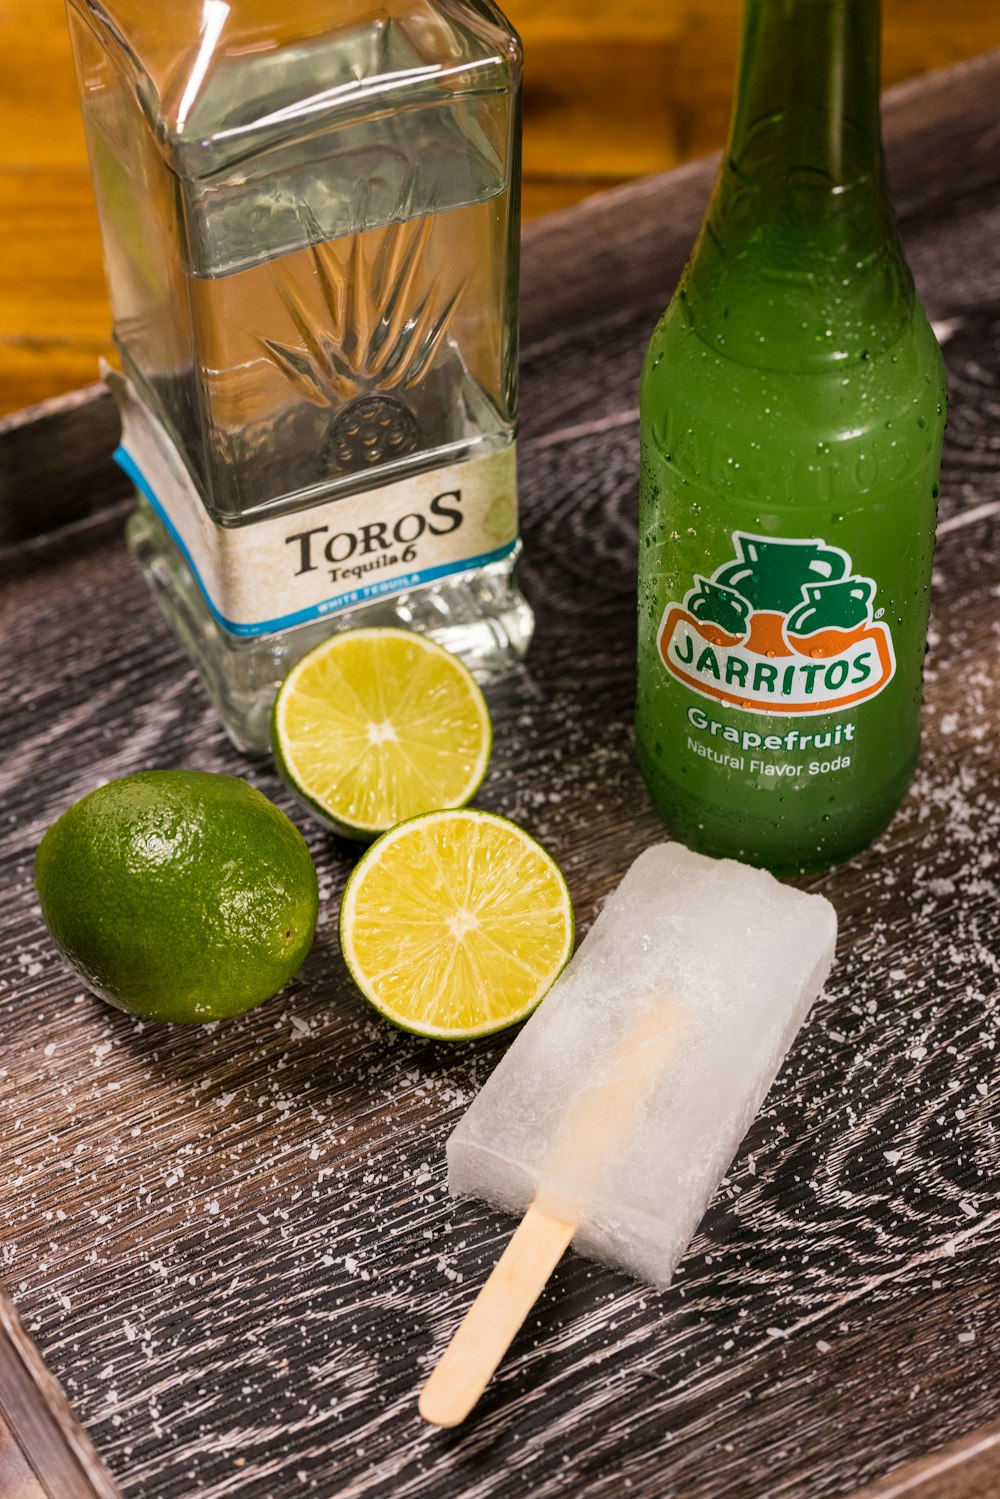 green and white labeled bottle beside sliced lemon